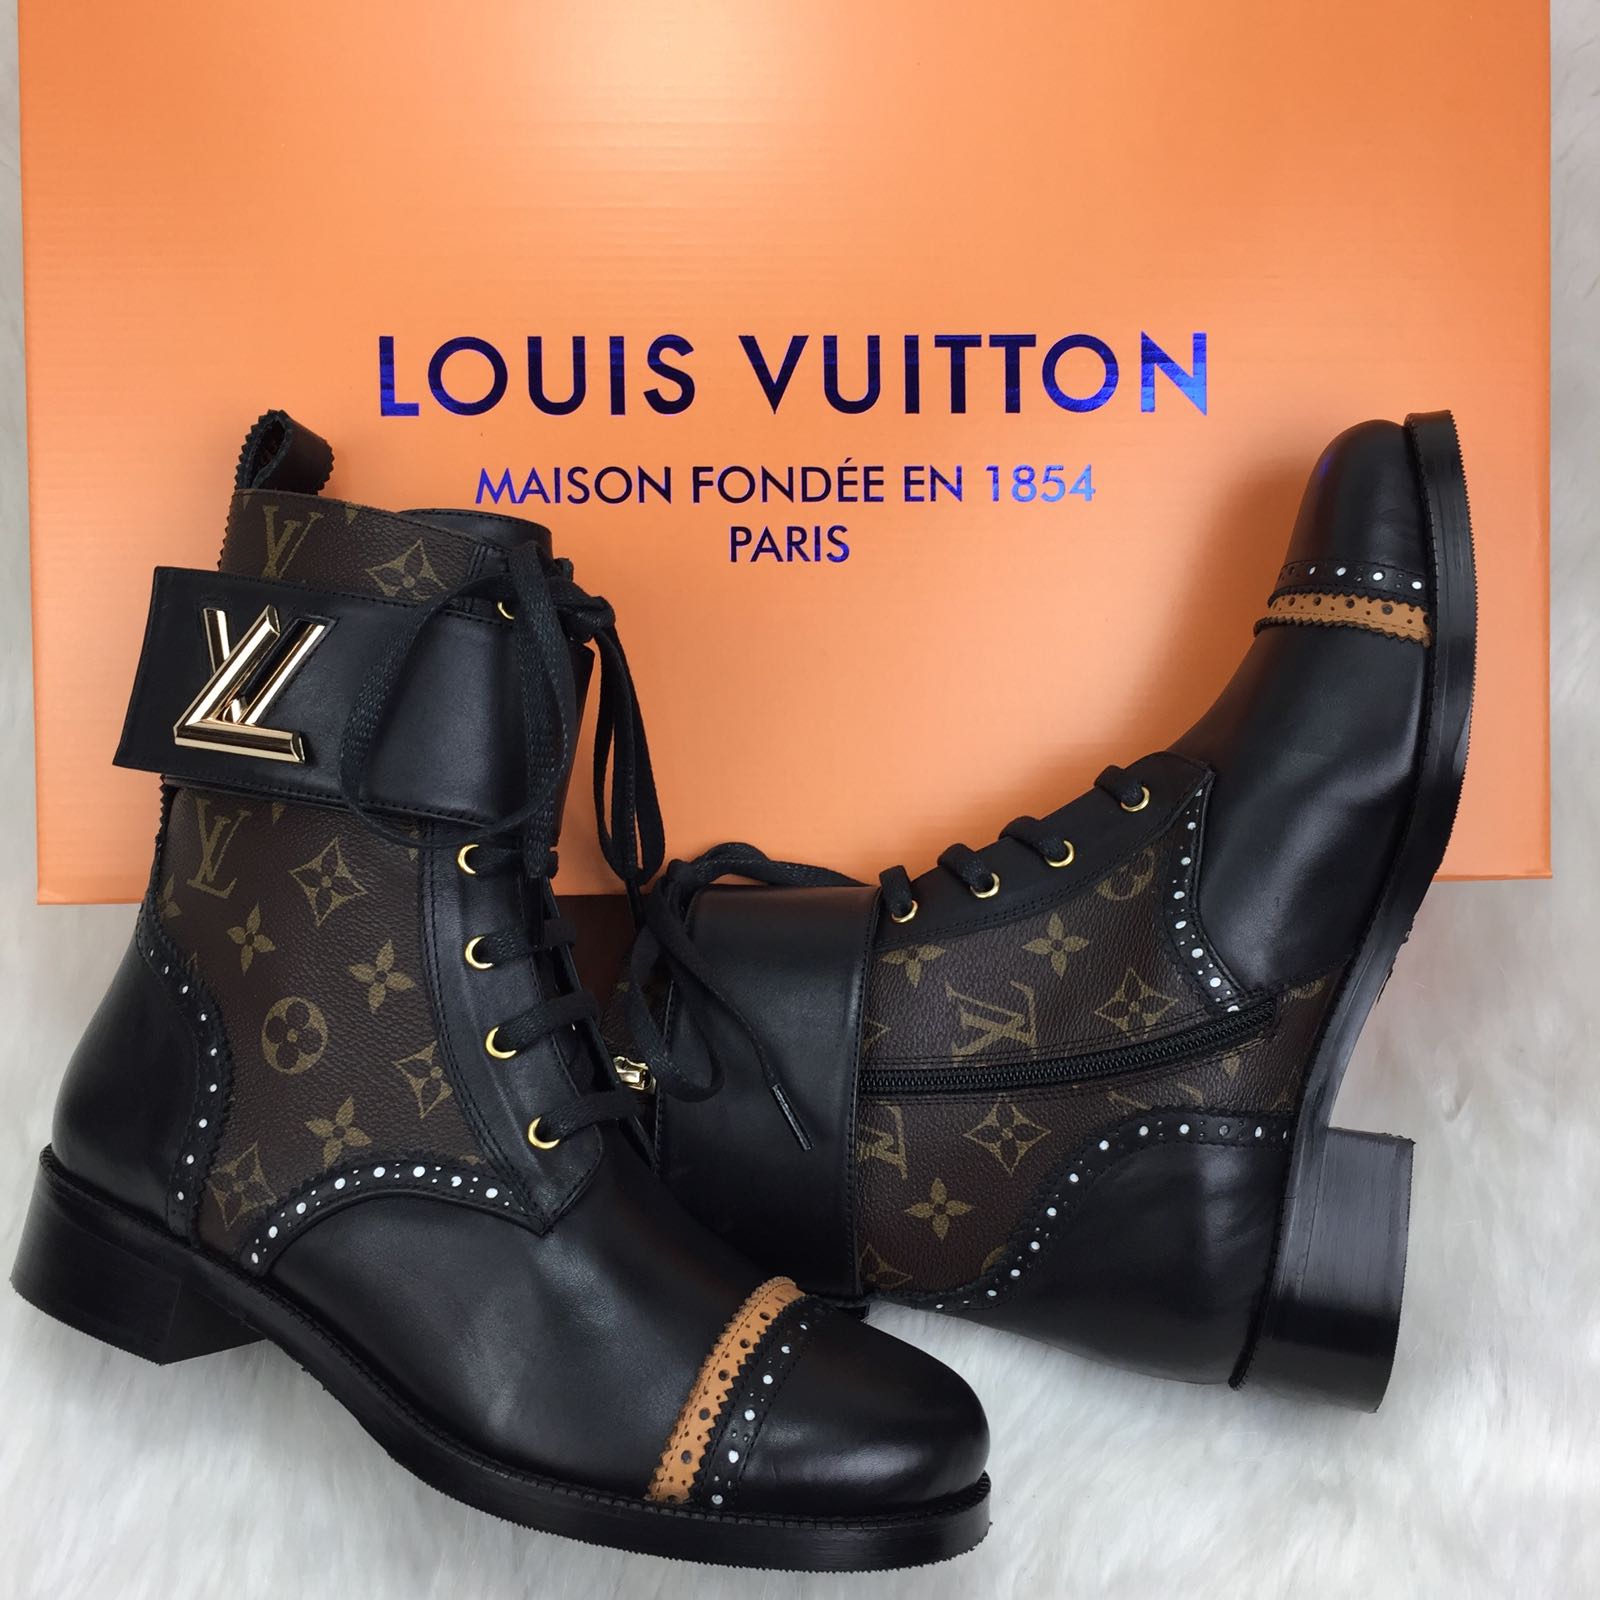 Louis Vuitton Replika Bot - 9960-5706 - 89.00 TL. - Kombincim